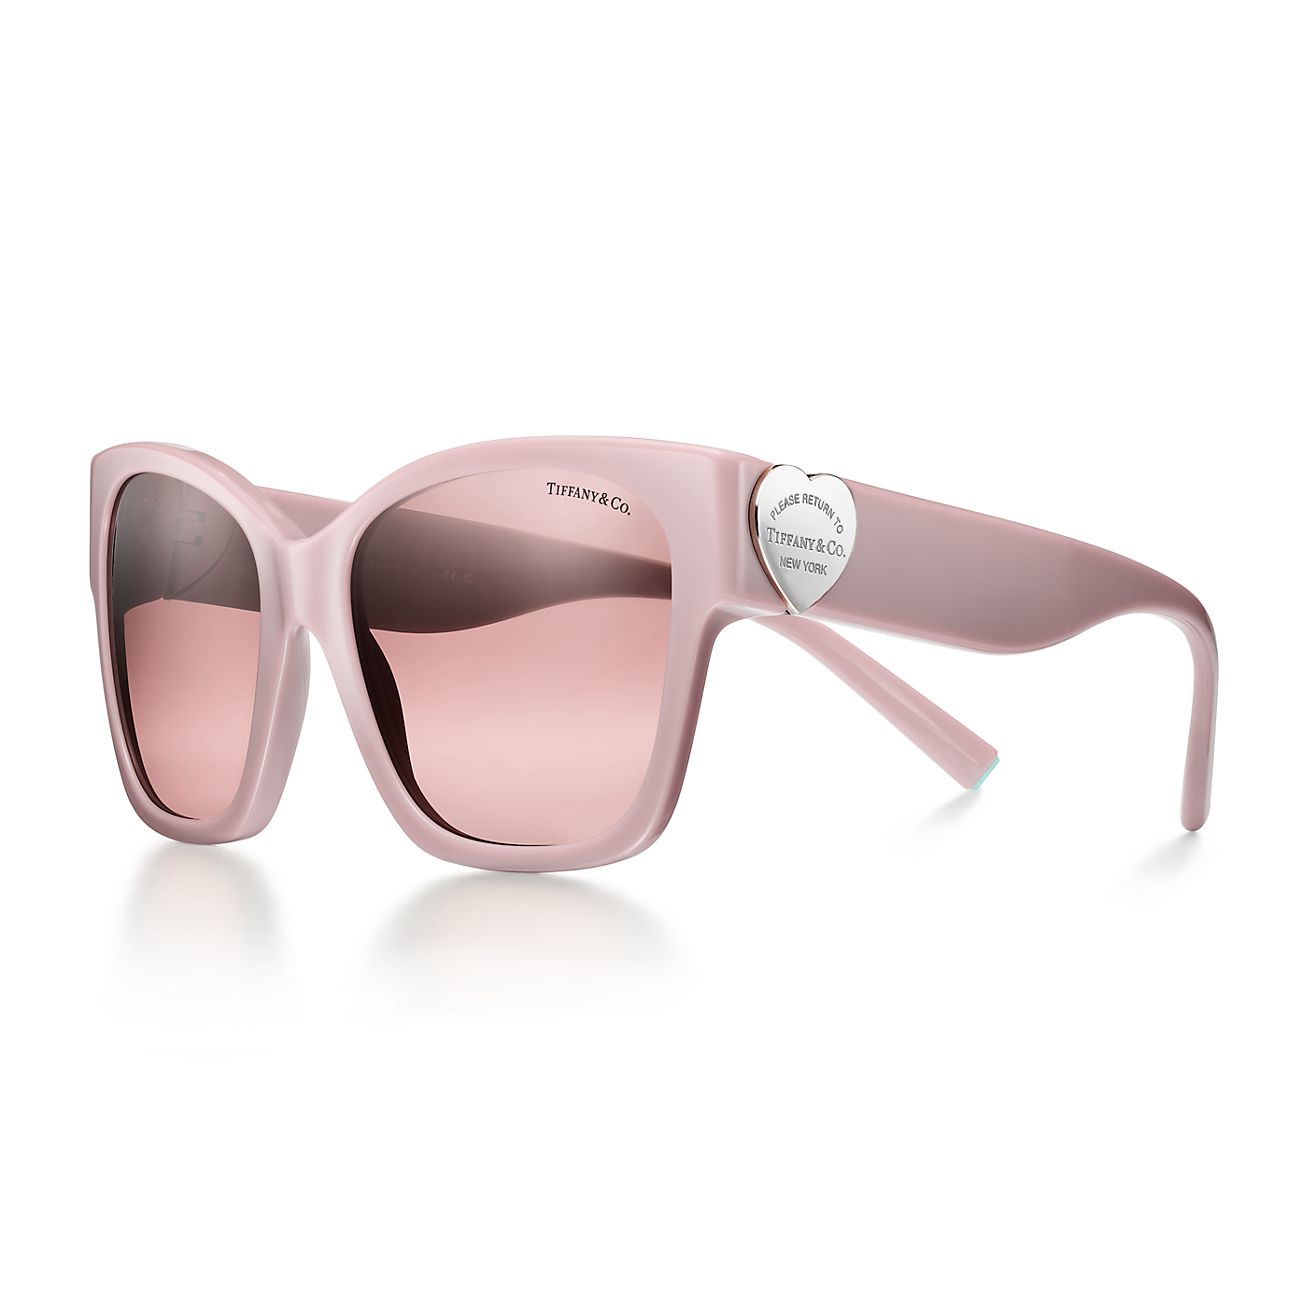 リターン トゥ ティファニー™ サングラス ダスティ ピンク アセテート ピンク グラデーション レンズ | Tiffany & Co.